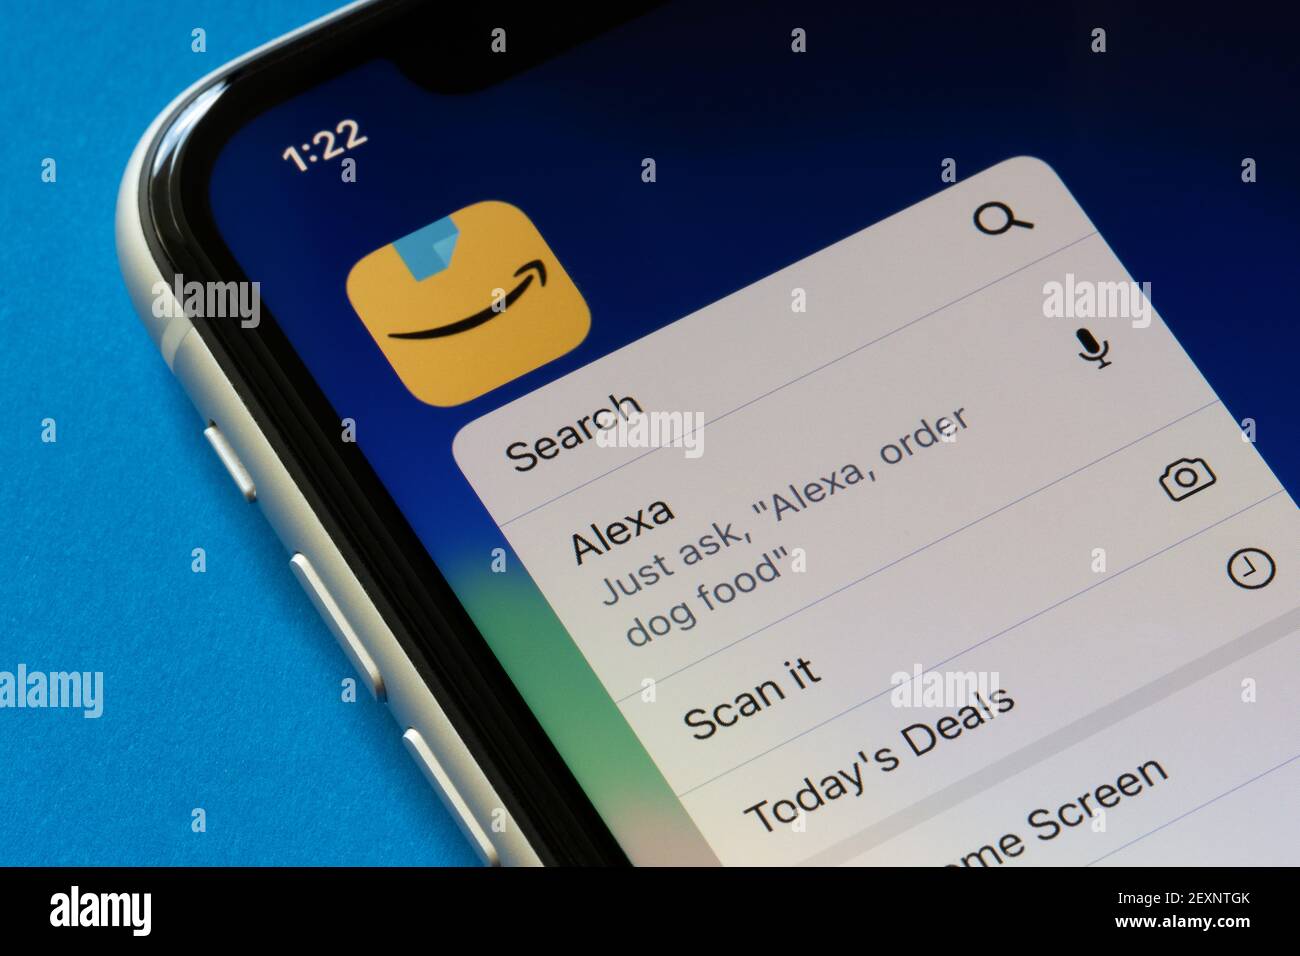 L'icône de l'application Amazon et son menu d'actions rapides sont visibles  sur un iPhone, avec des fonctions incluant le service de commande vocale  Alexa, le 4 mars 2021 Photo Stock - Alamy